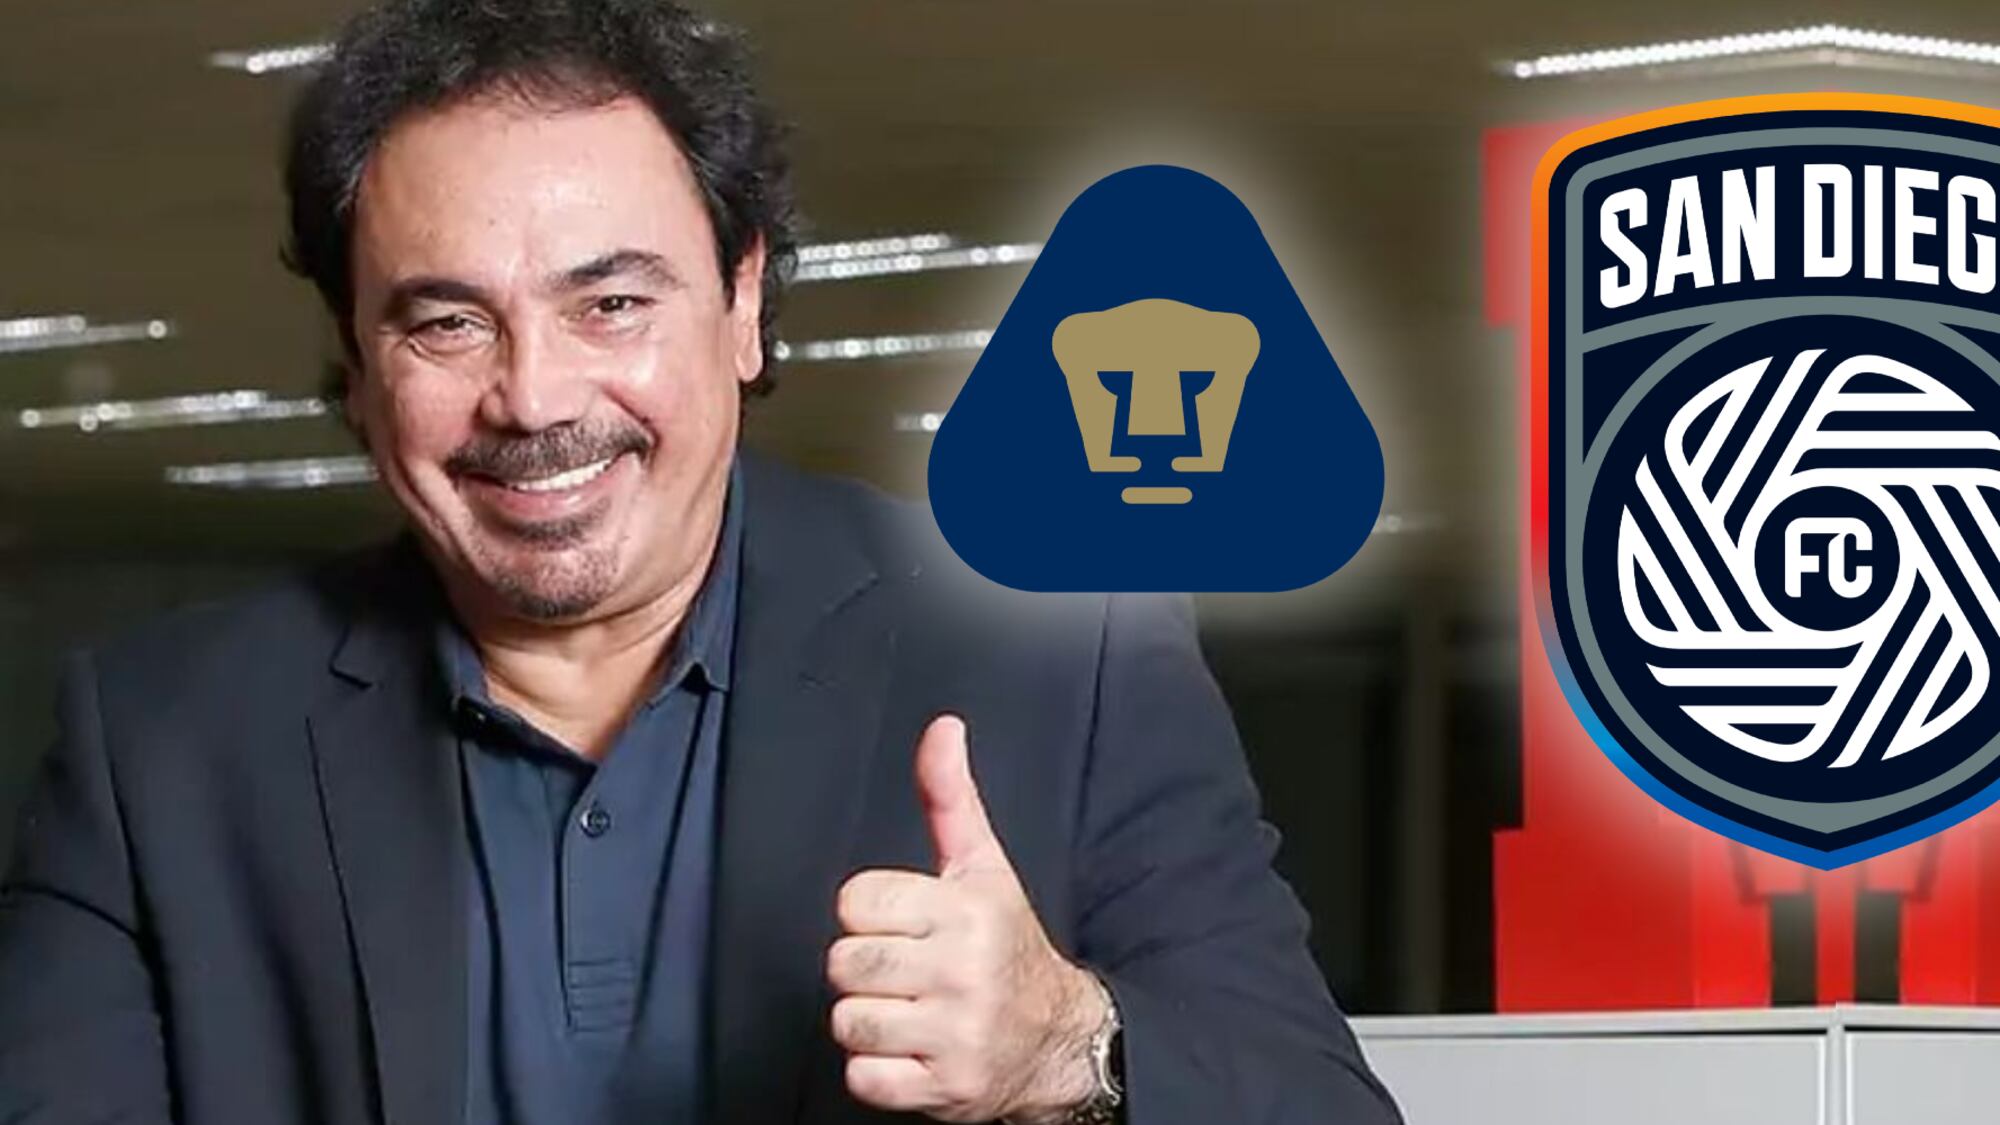 San Diego FC lo quiere y la reacción de Hugo Sánchez cuando le ofrecieron dirigir Pumas